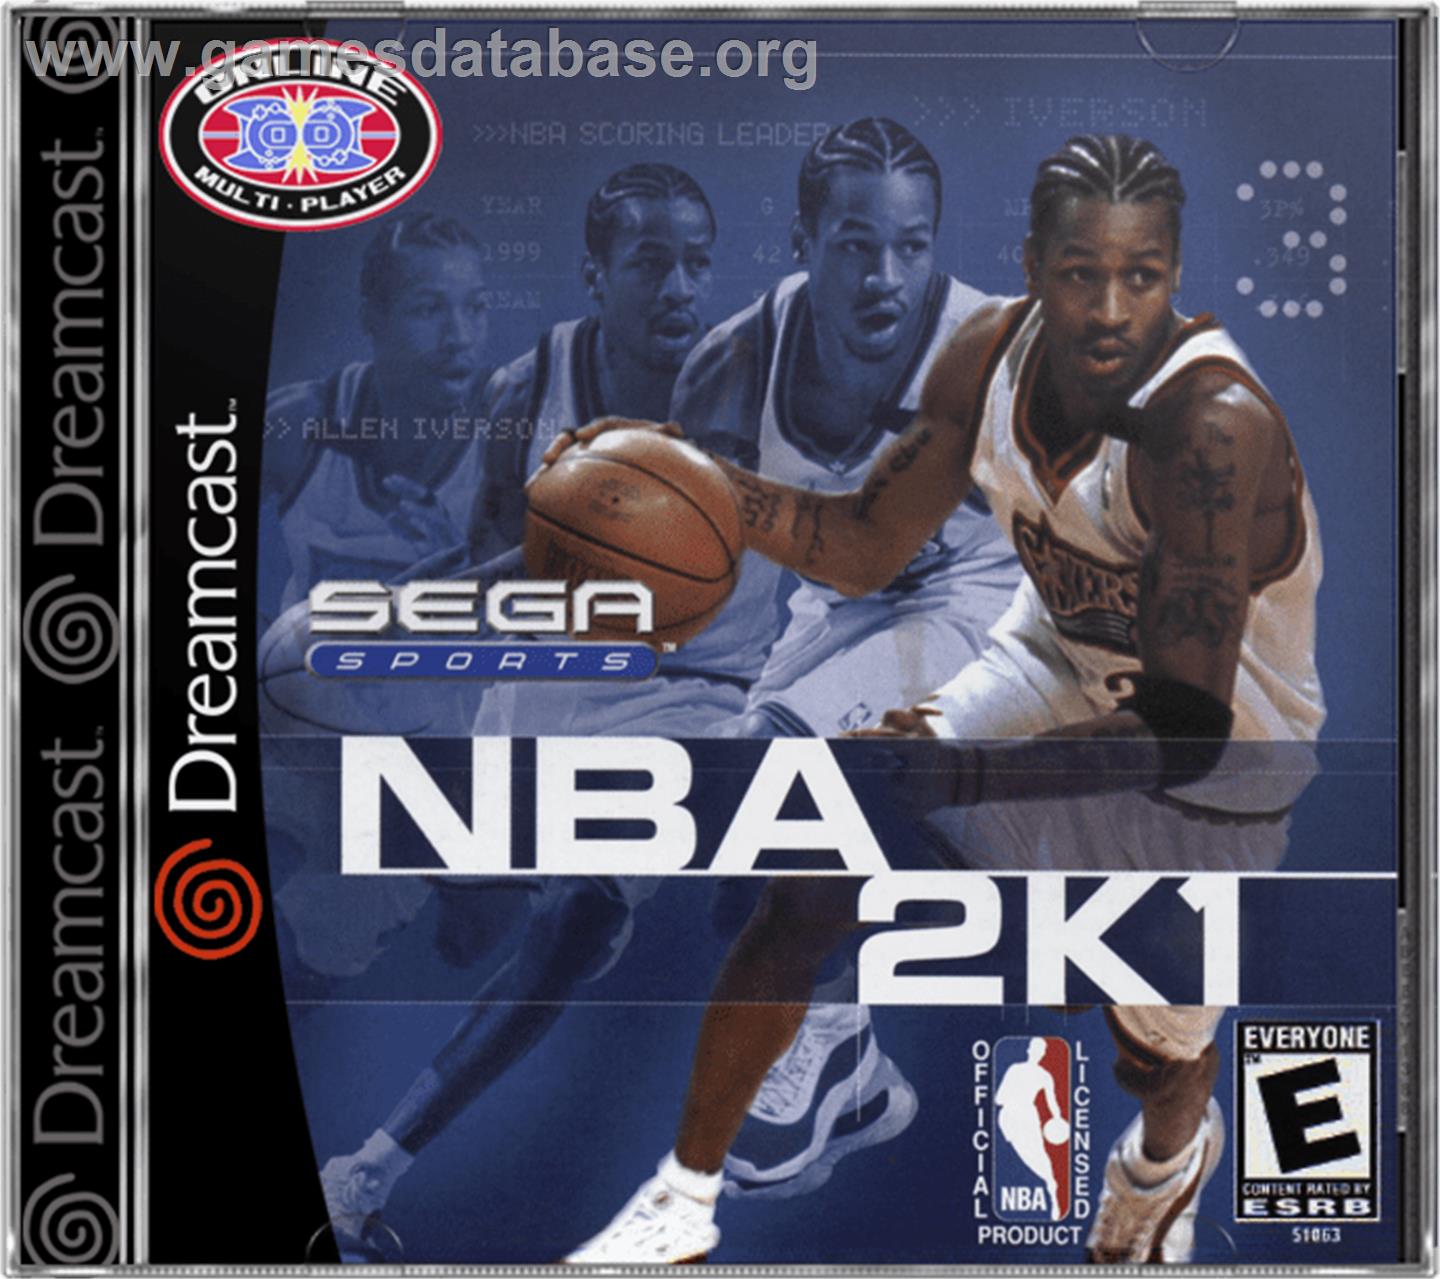 NBA 2K1 - Sega Dreamcast - Artwork - Box